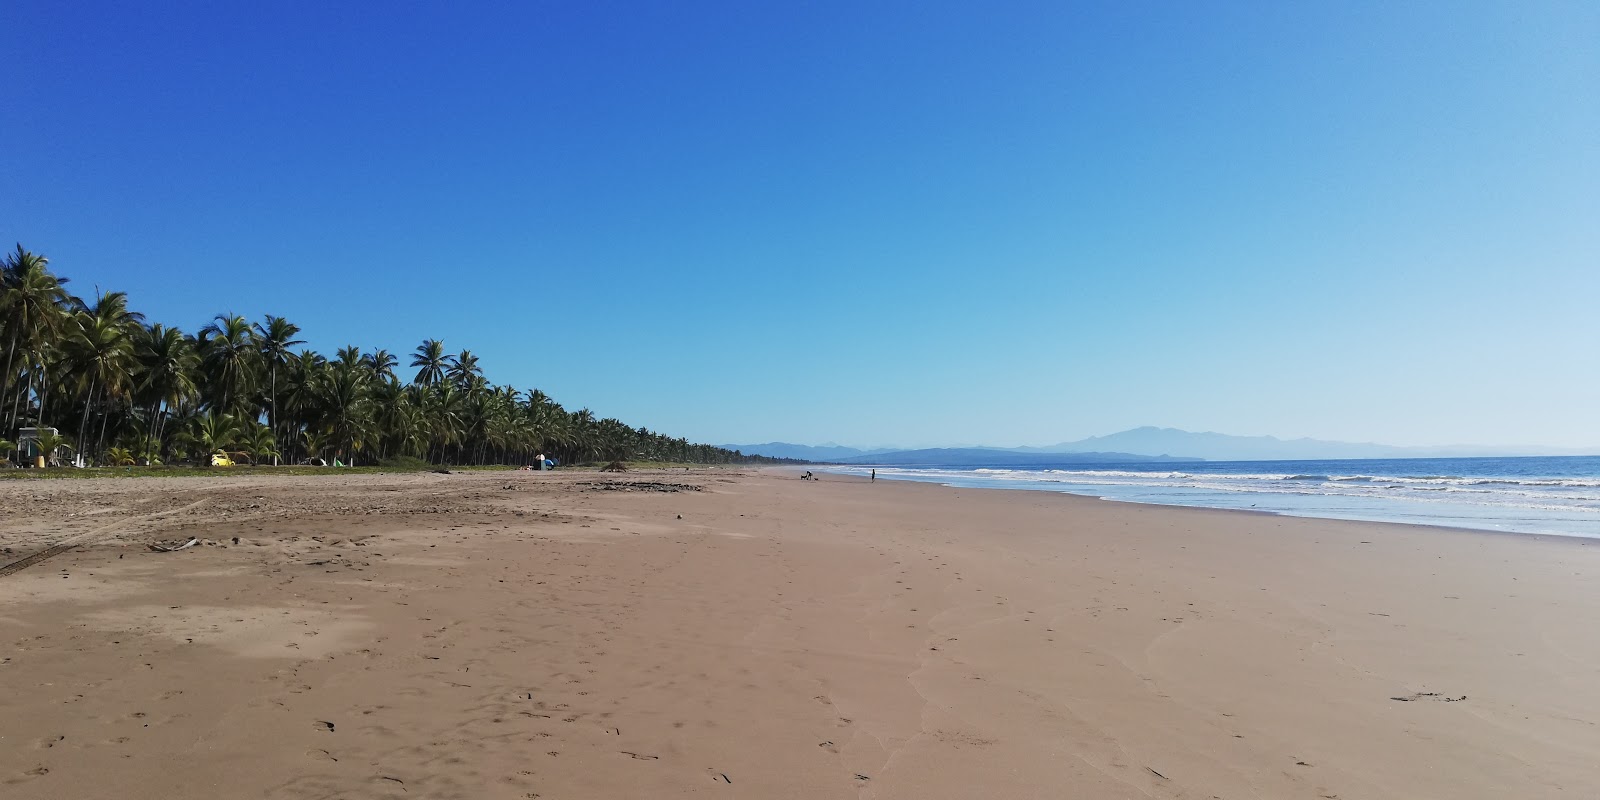 Foto de Chila beach com meios de comunicação nível de limpeza